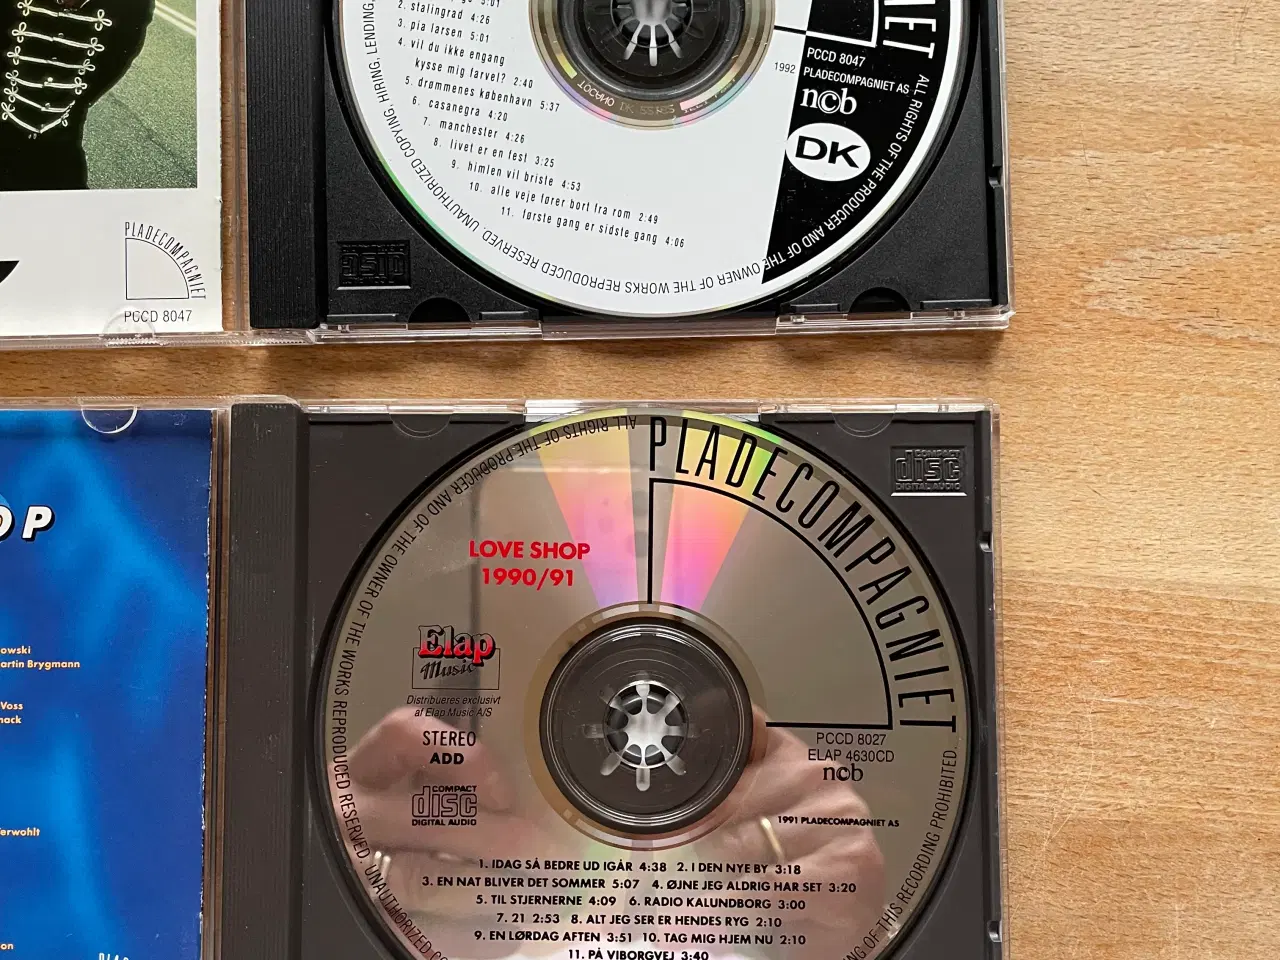 Billede 3 - Love shop cd’er 1990/91, DK